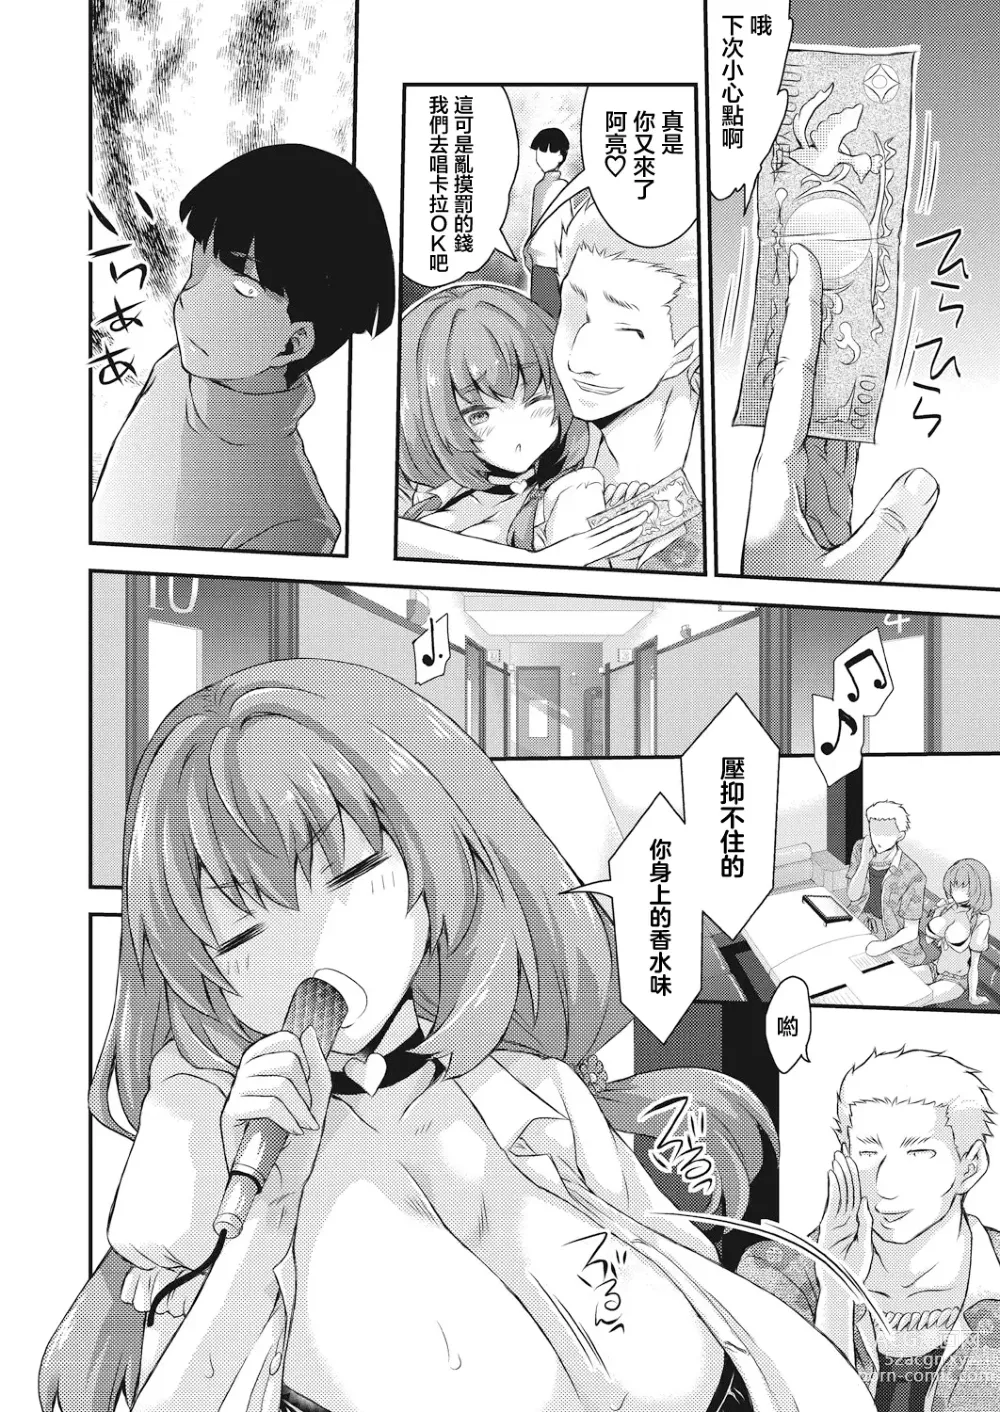 Page 6 of manga BOCCHI NO ZAMMA 2